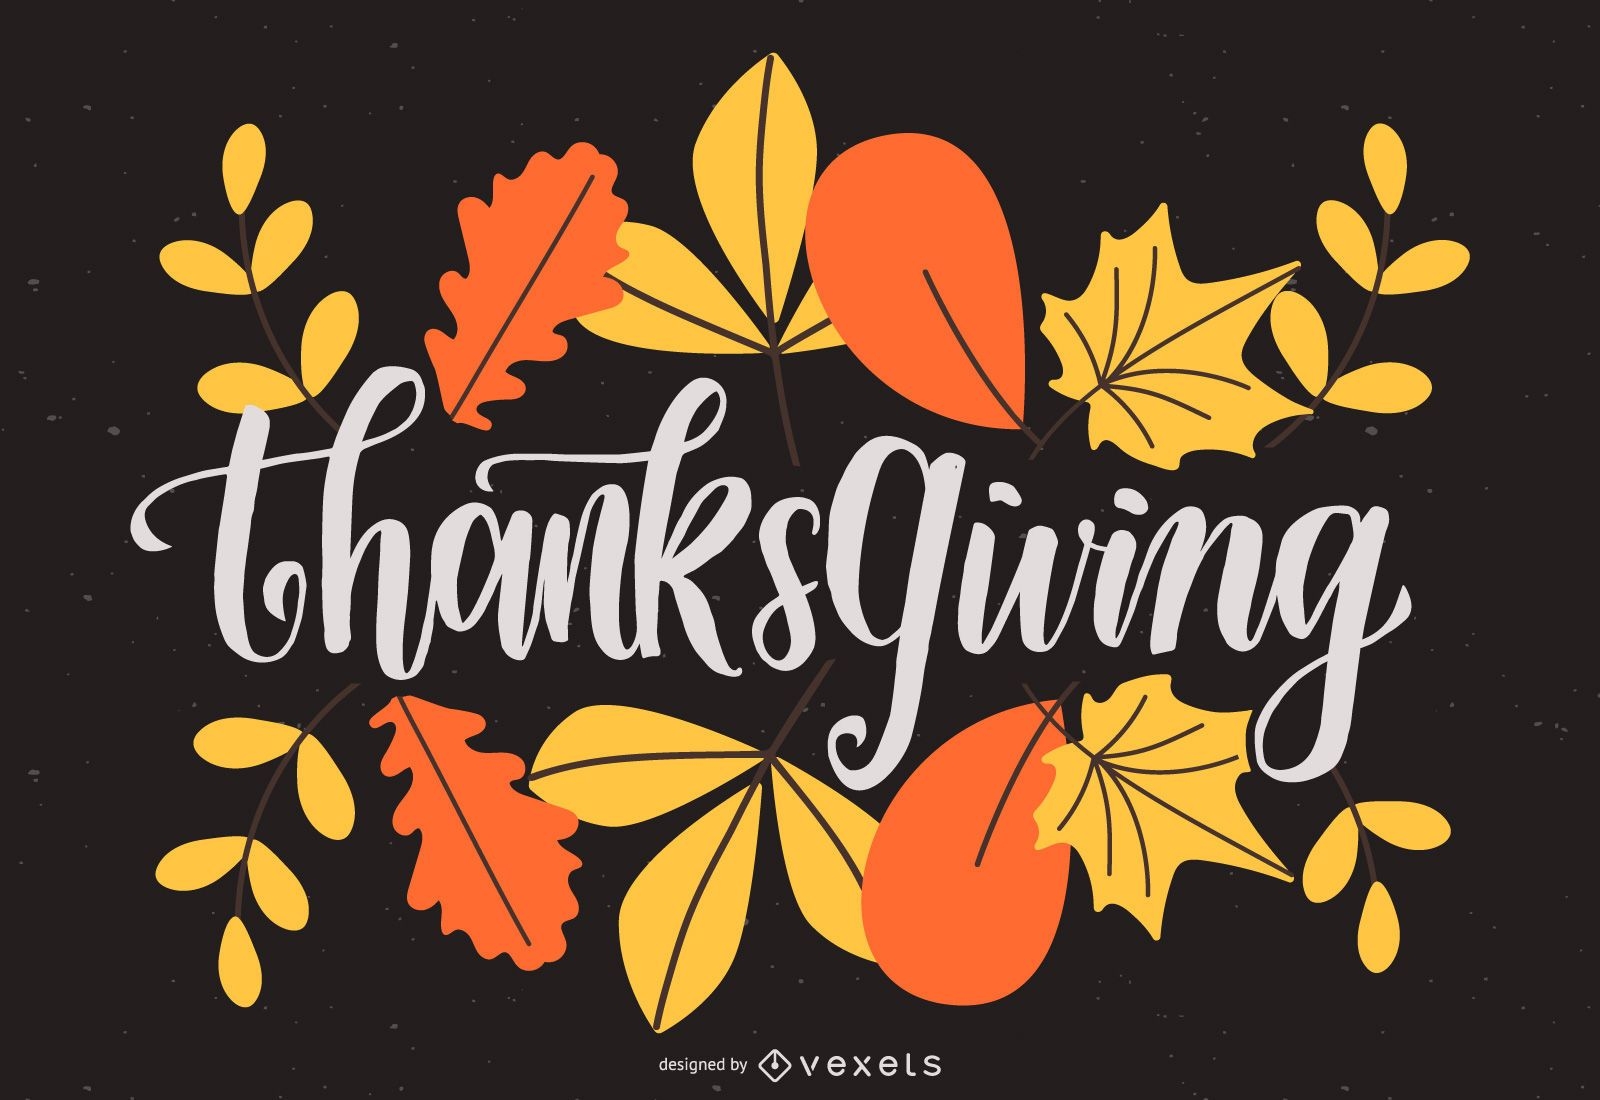 Thanksgiving leaves lettering design